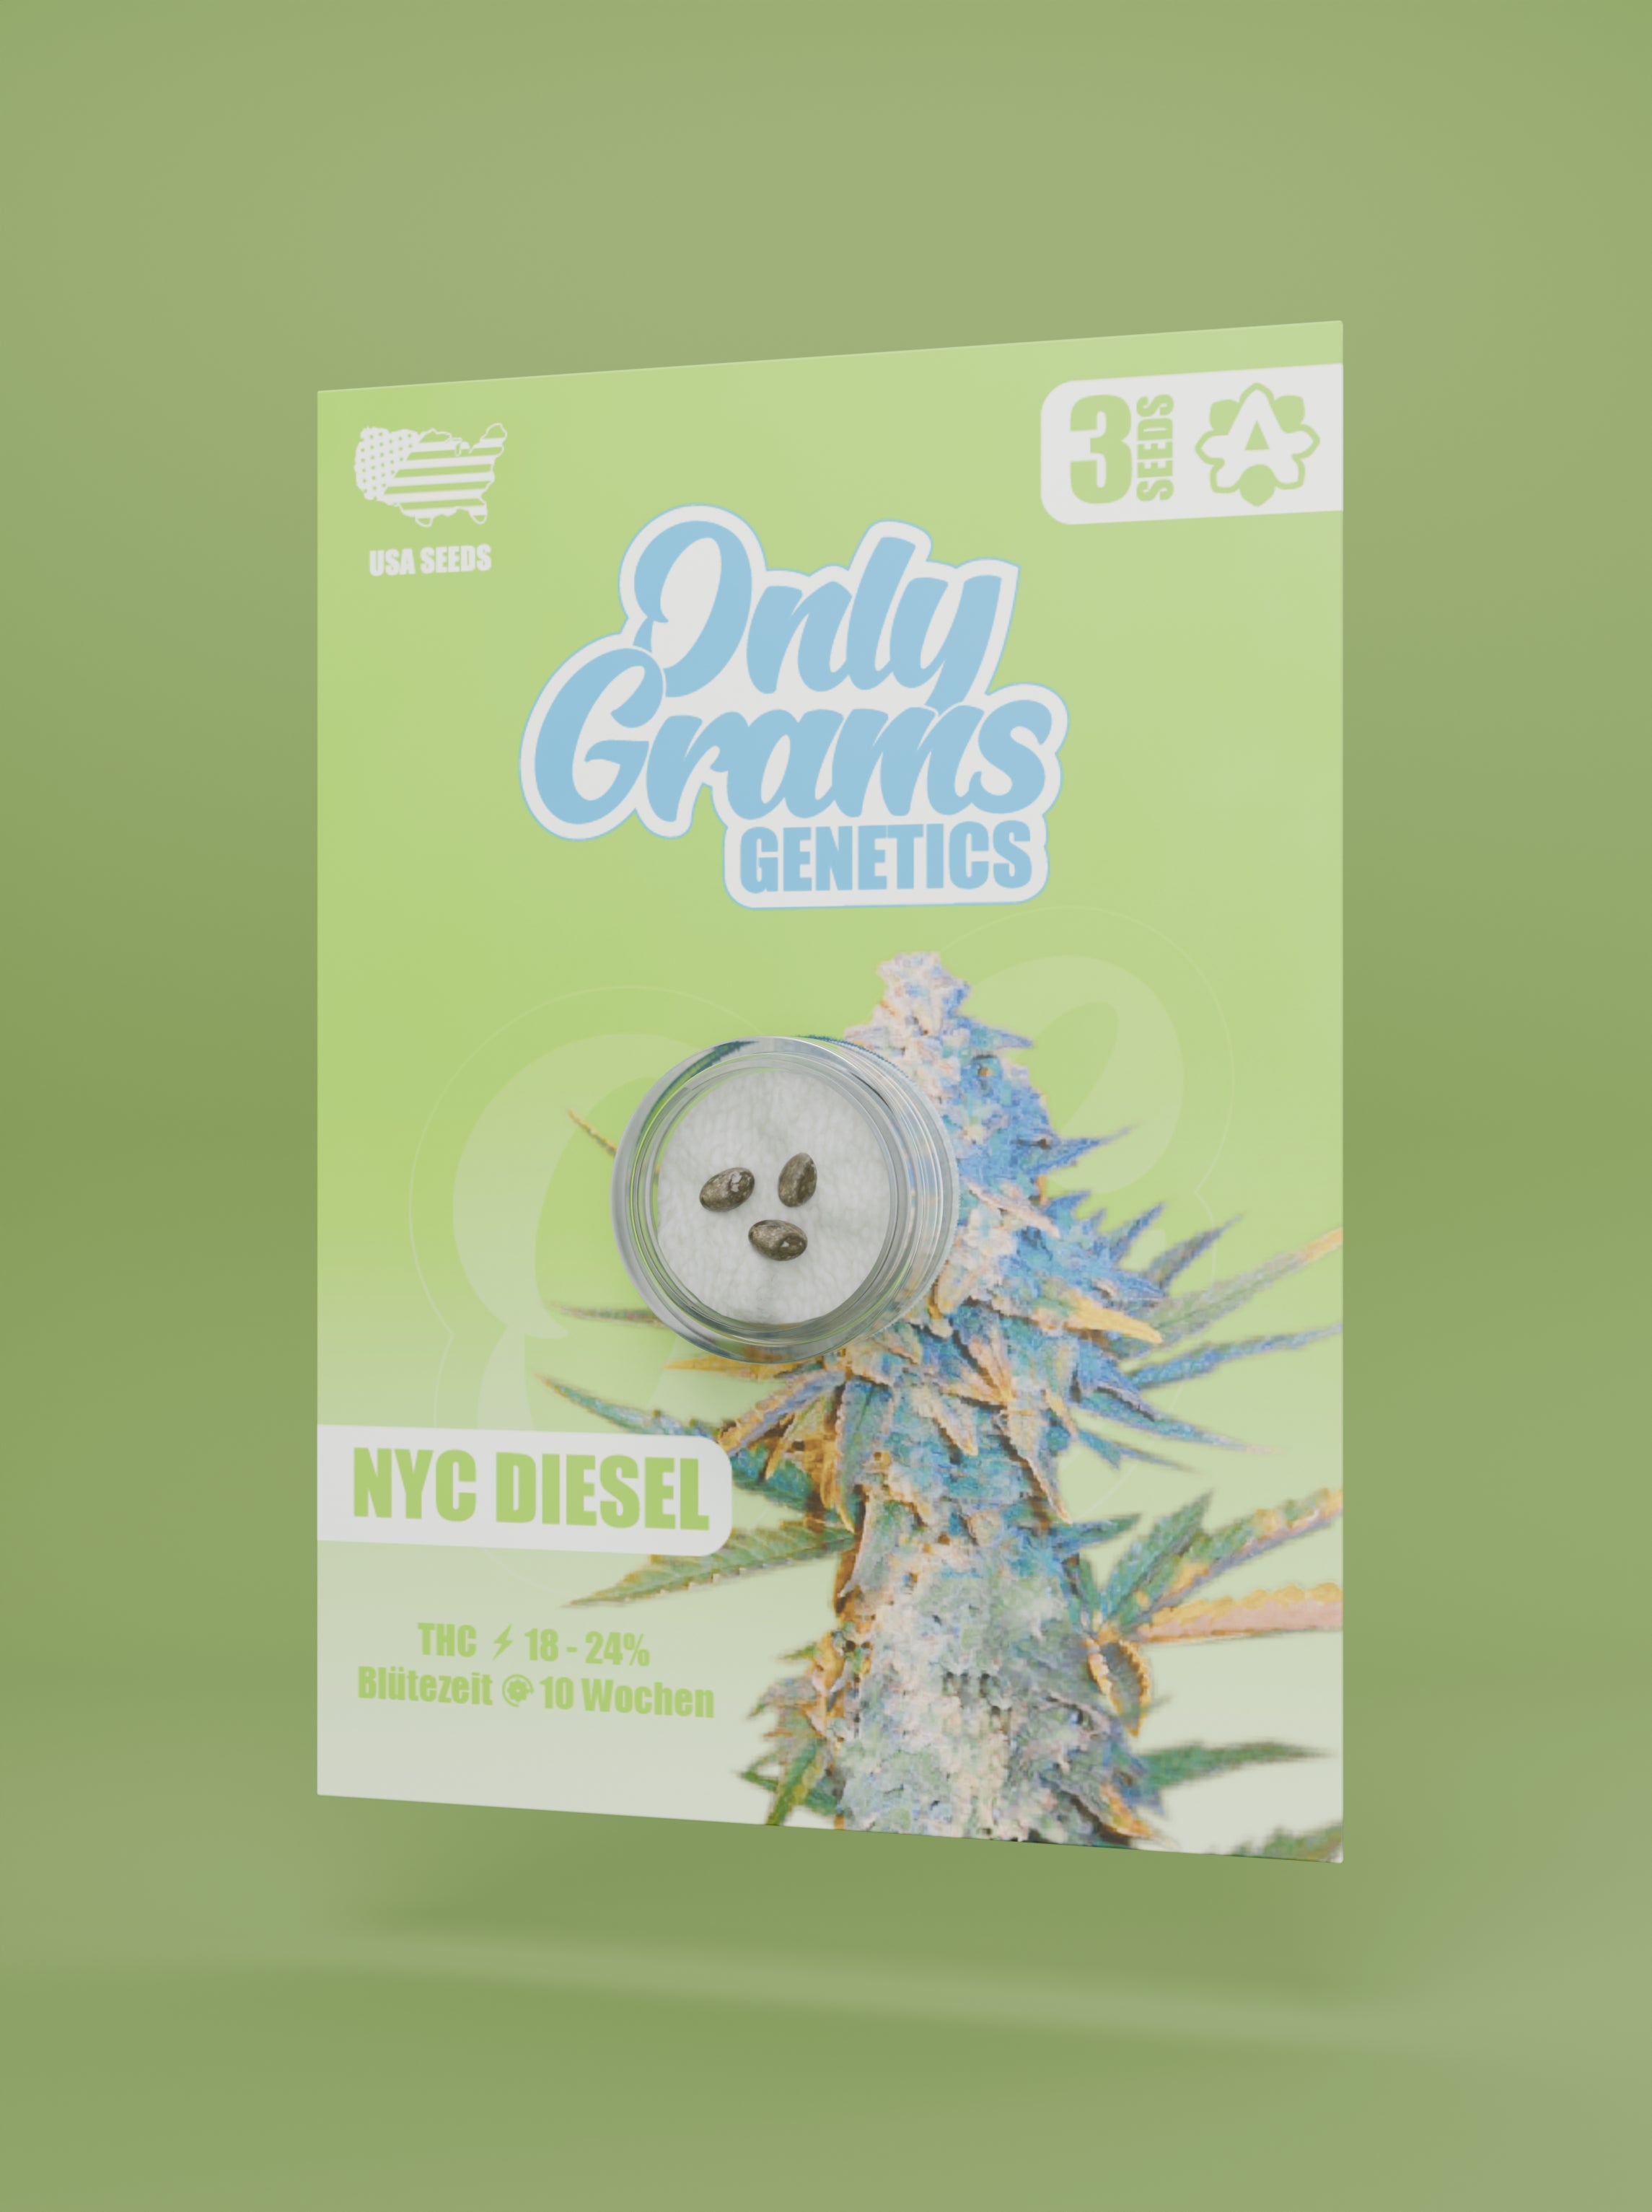 NYC Diesel THC-Seeds